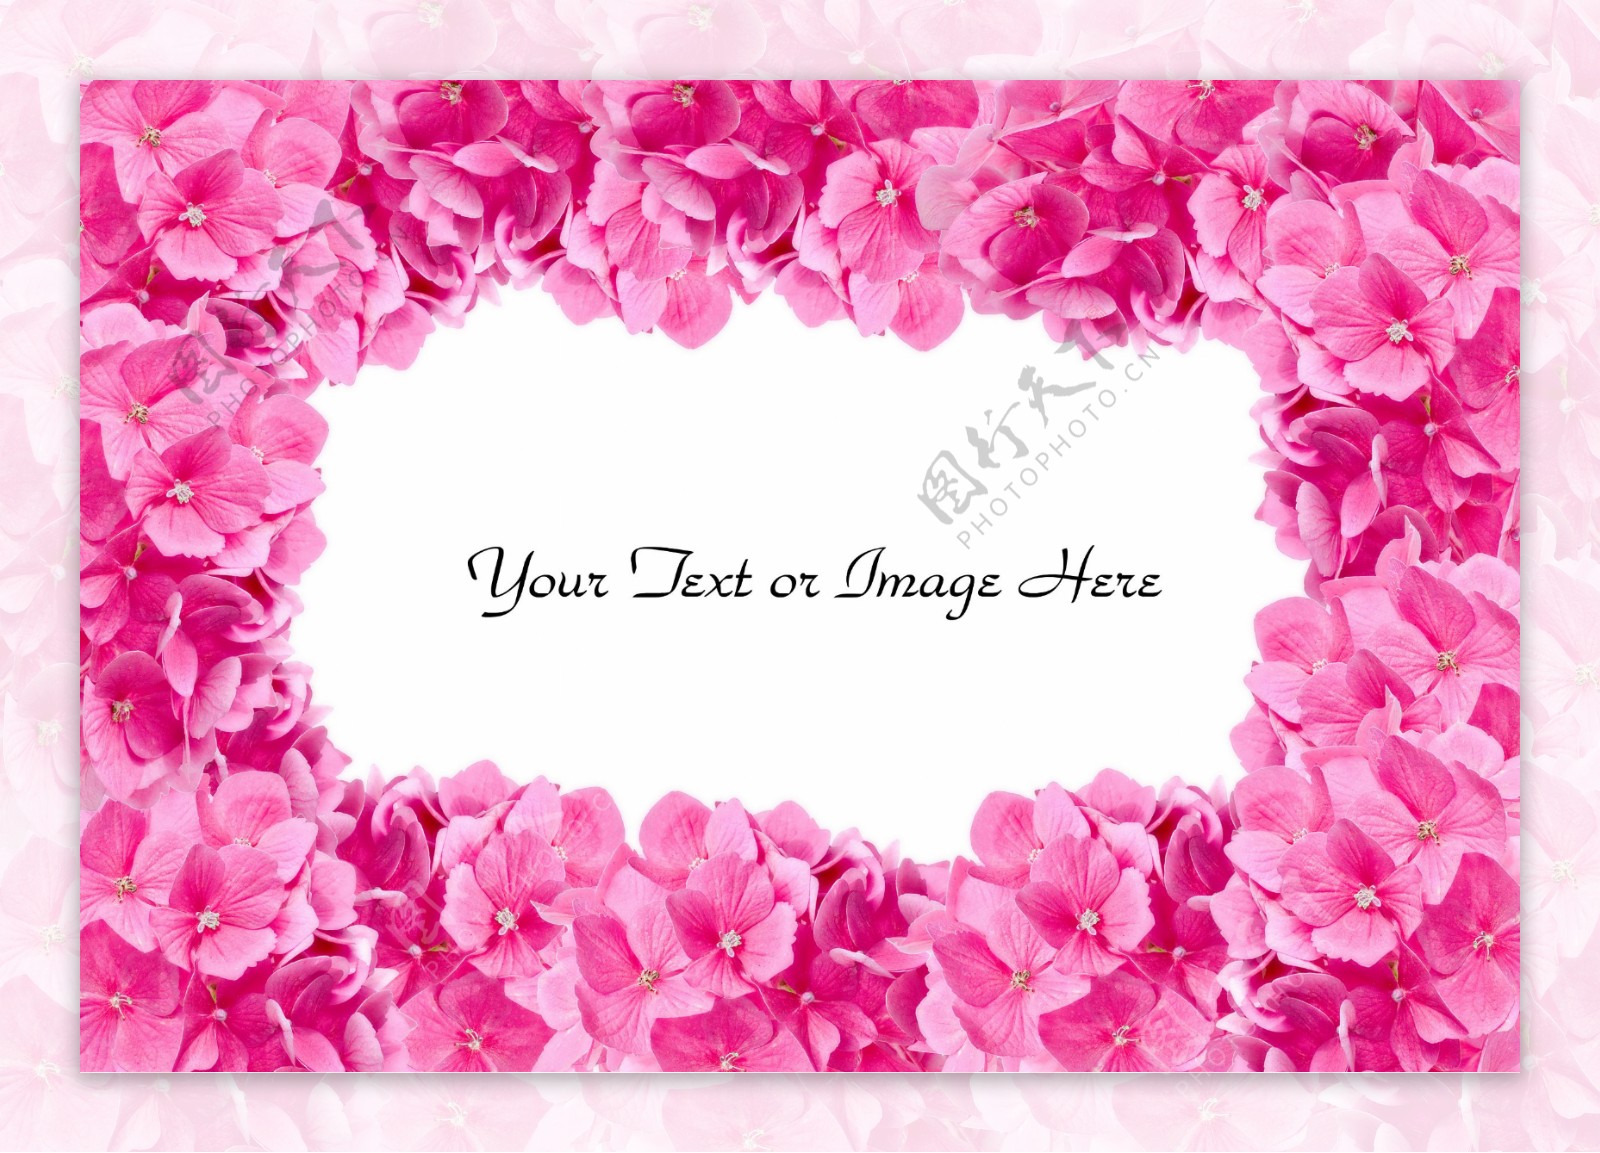 粉红色鲜花相框图片